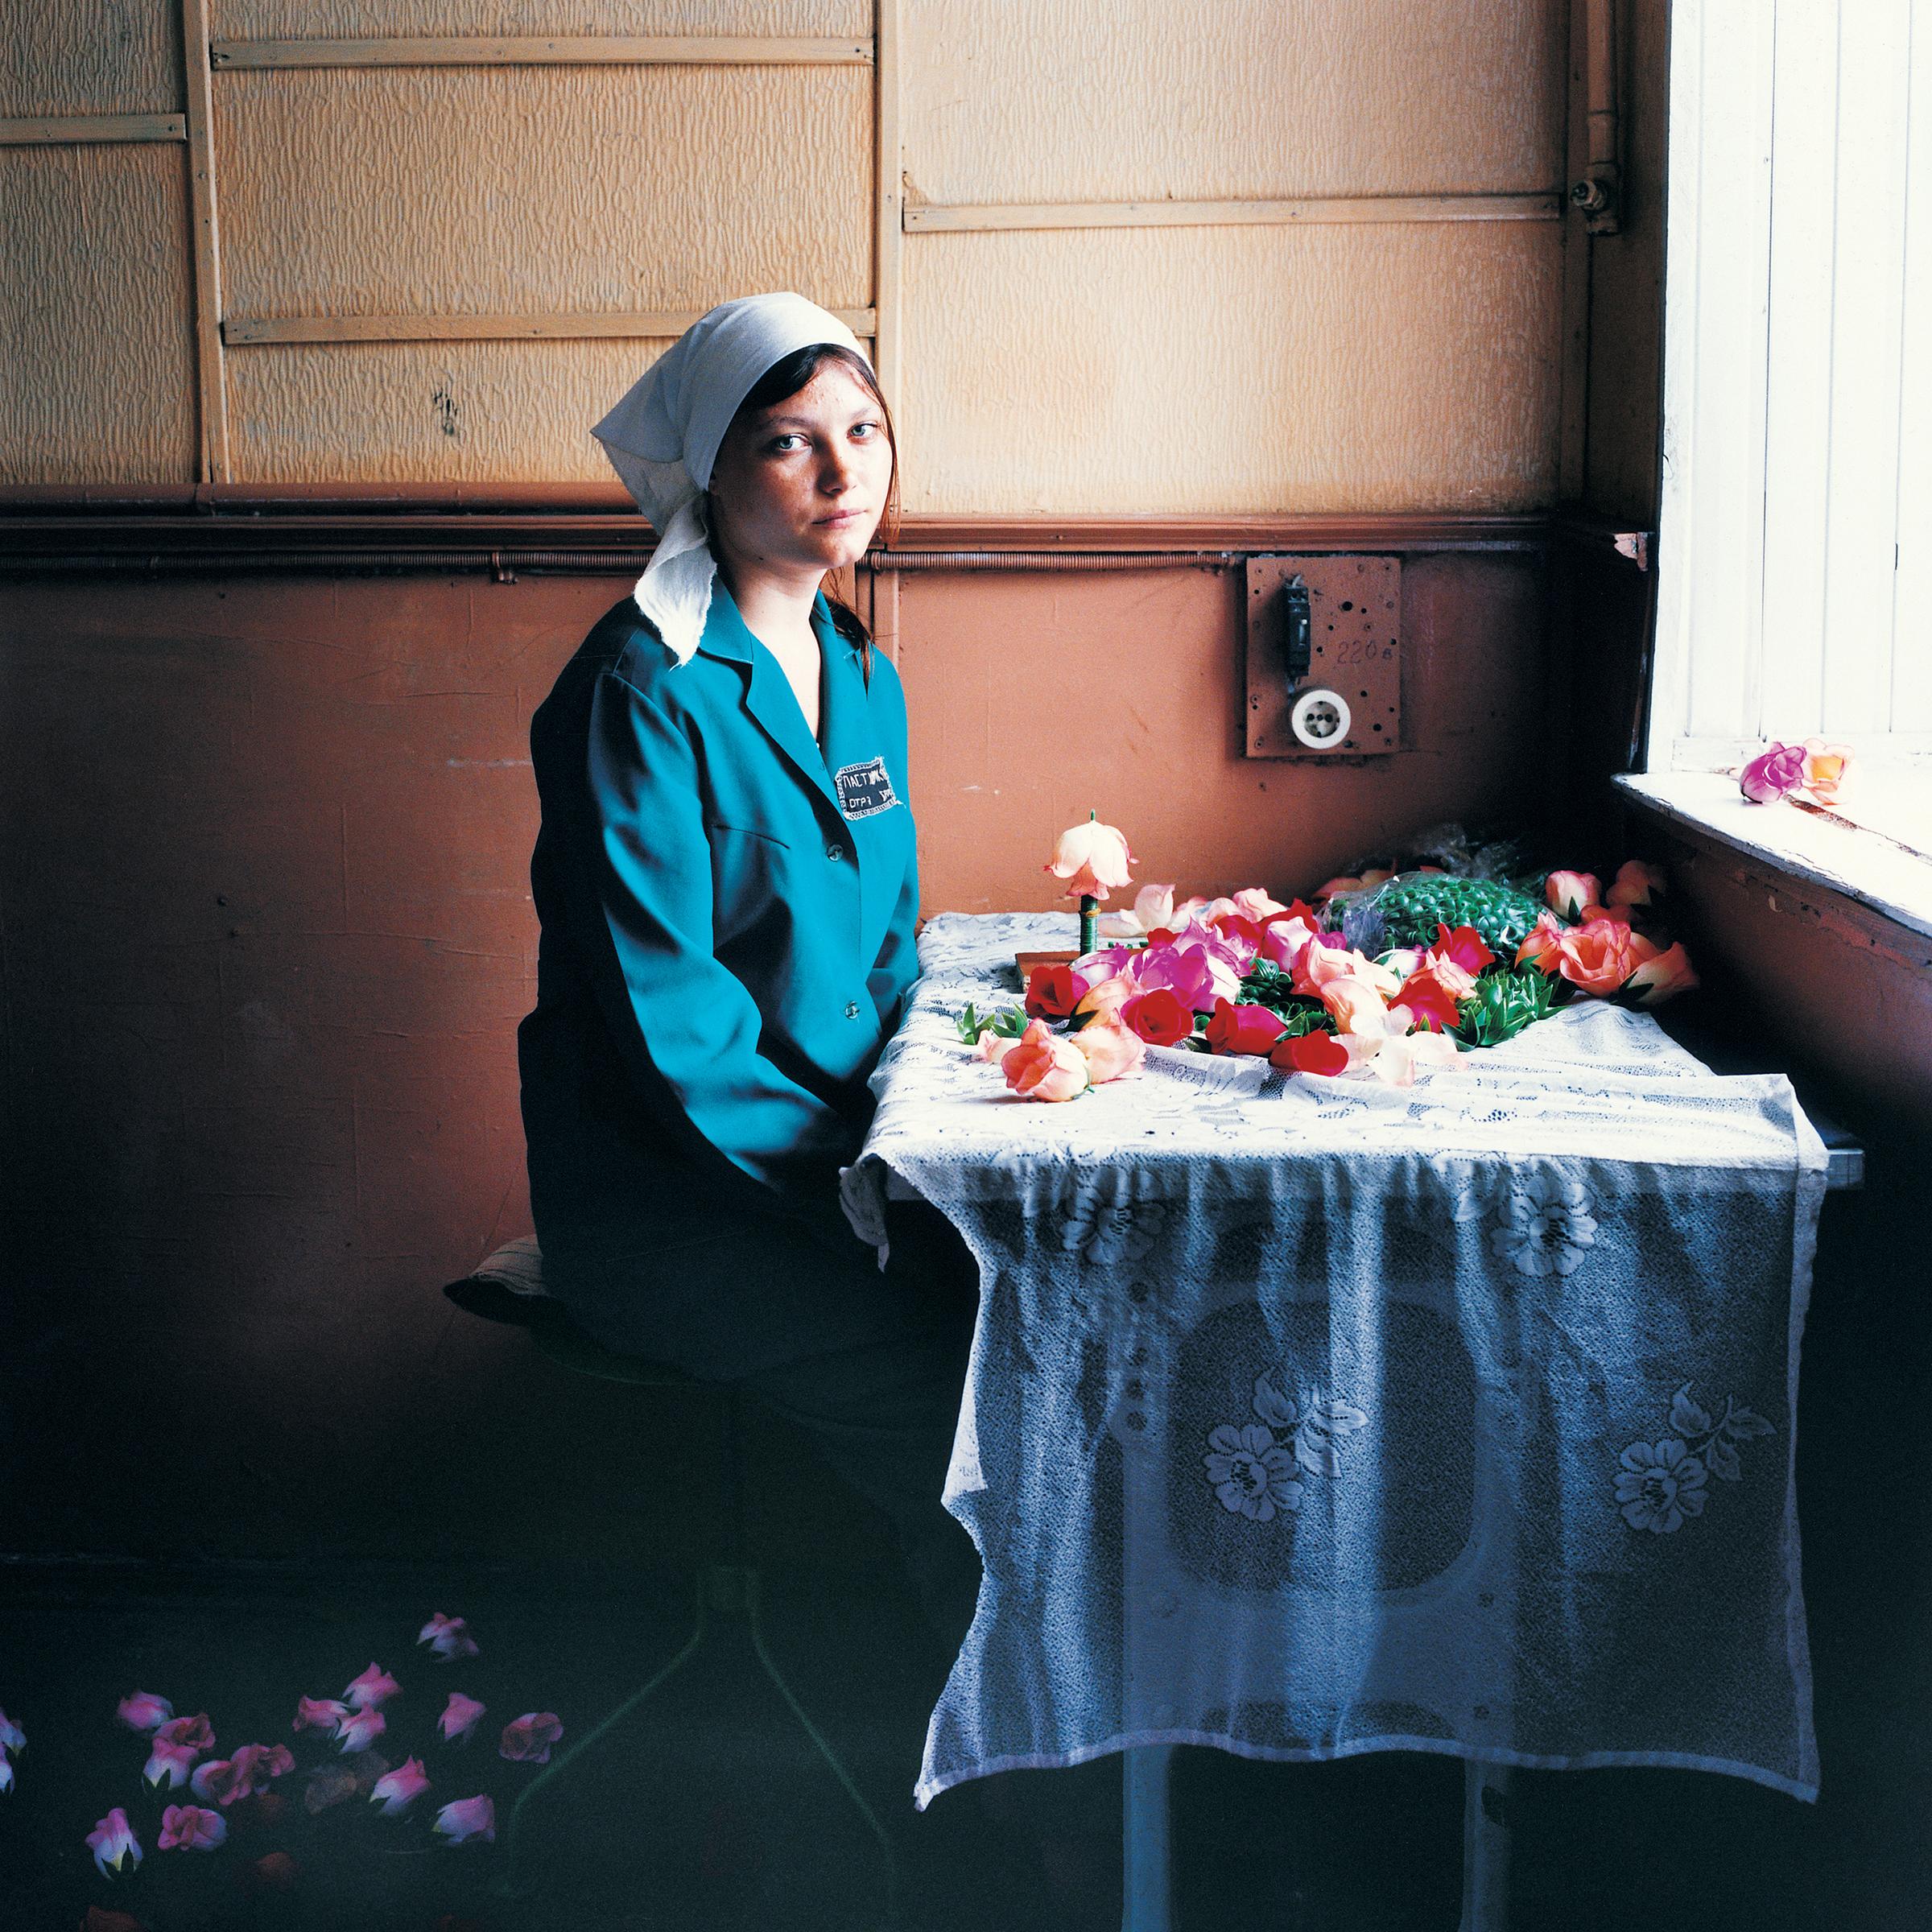 Michal Chelbin Portrait Photograph – Nadia (verurteilt wegen Rauschgift): Frauengefängnis